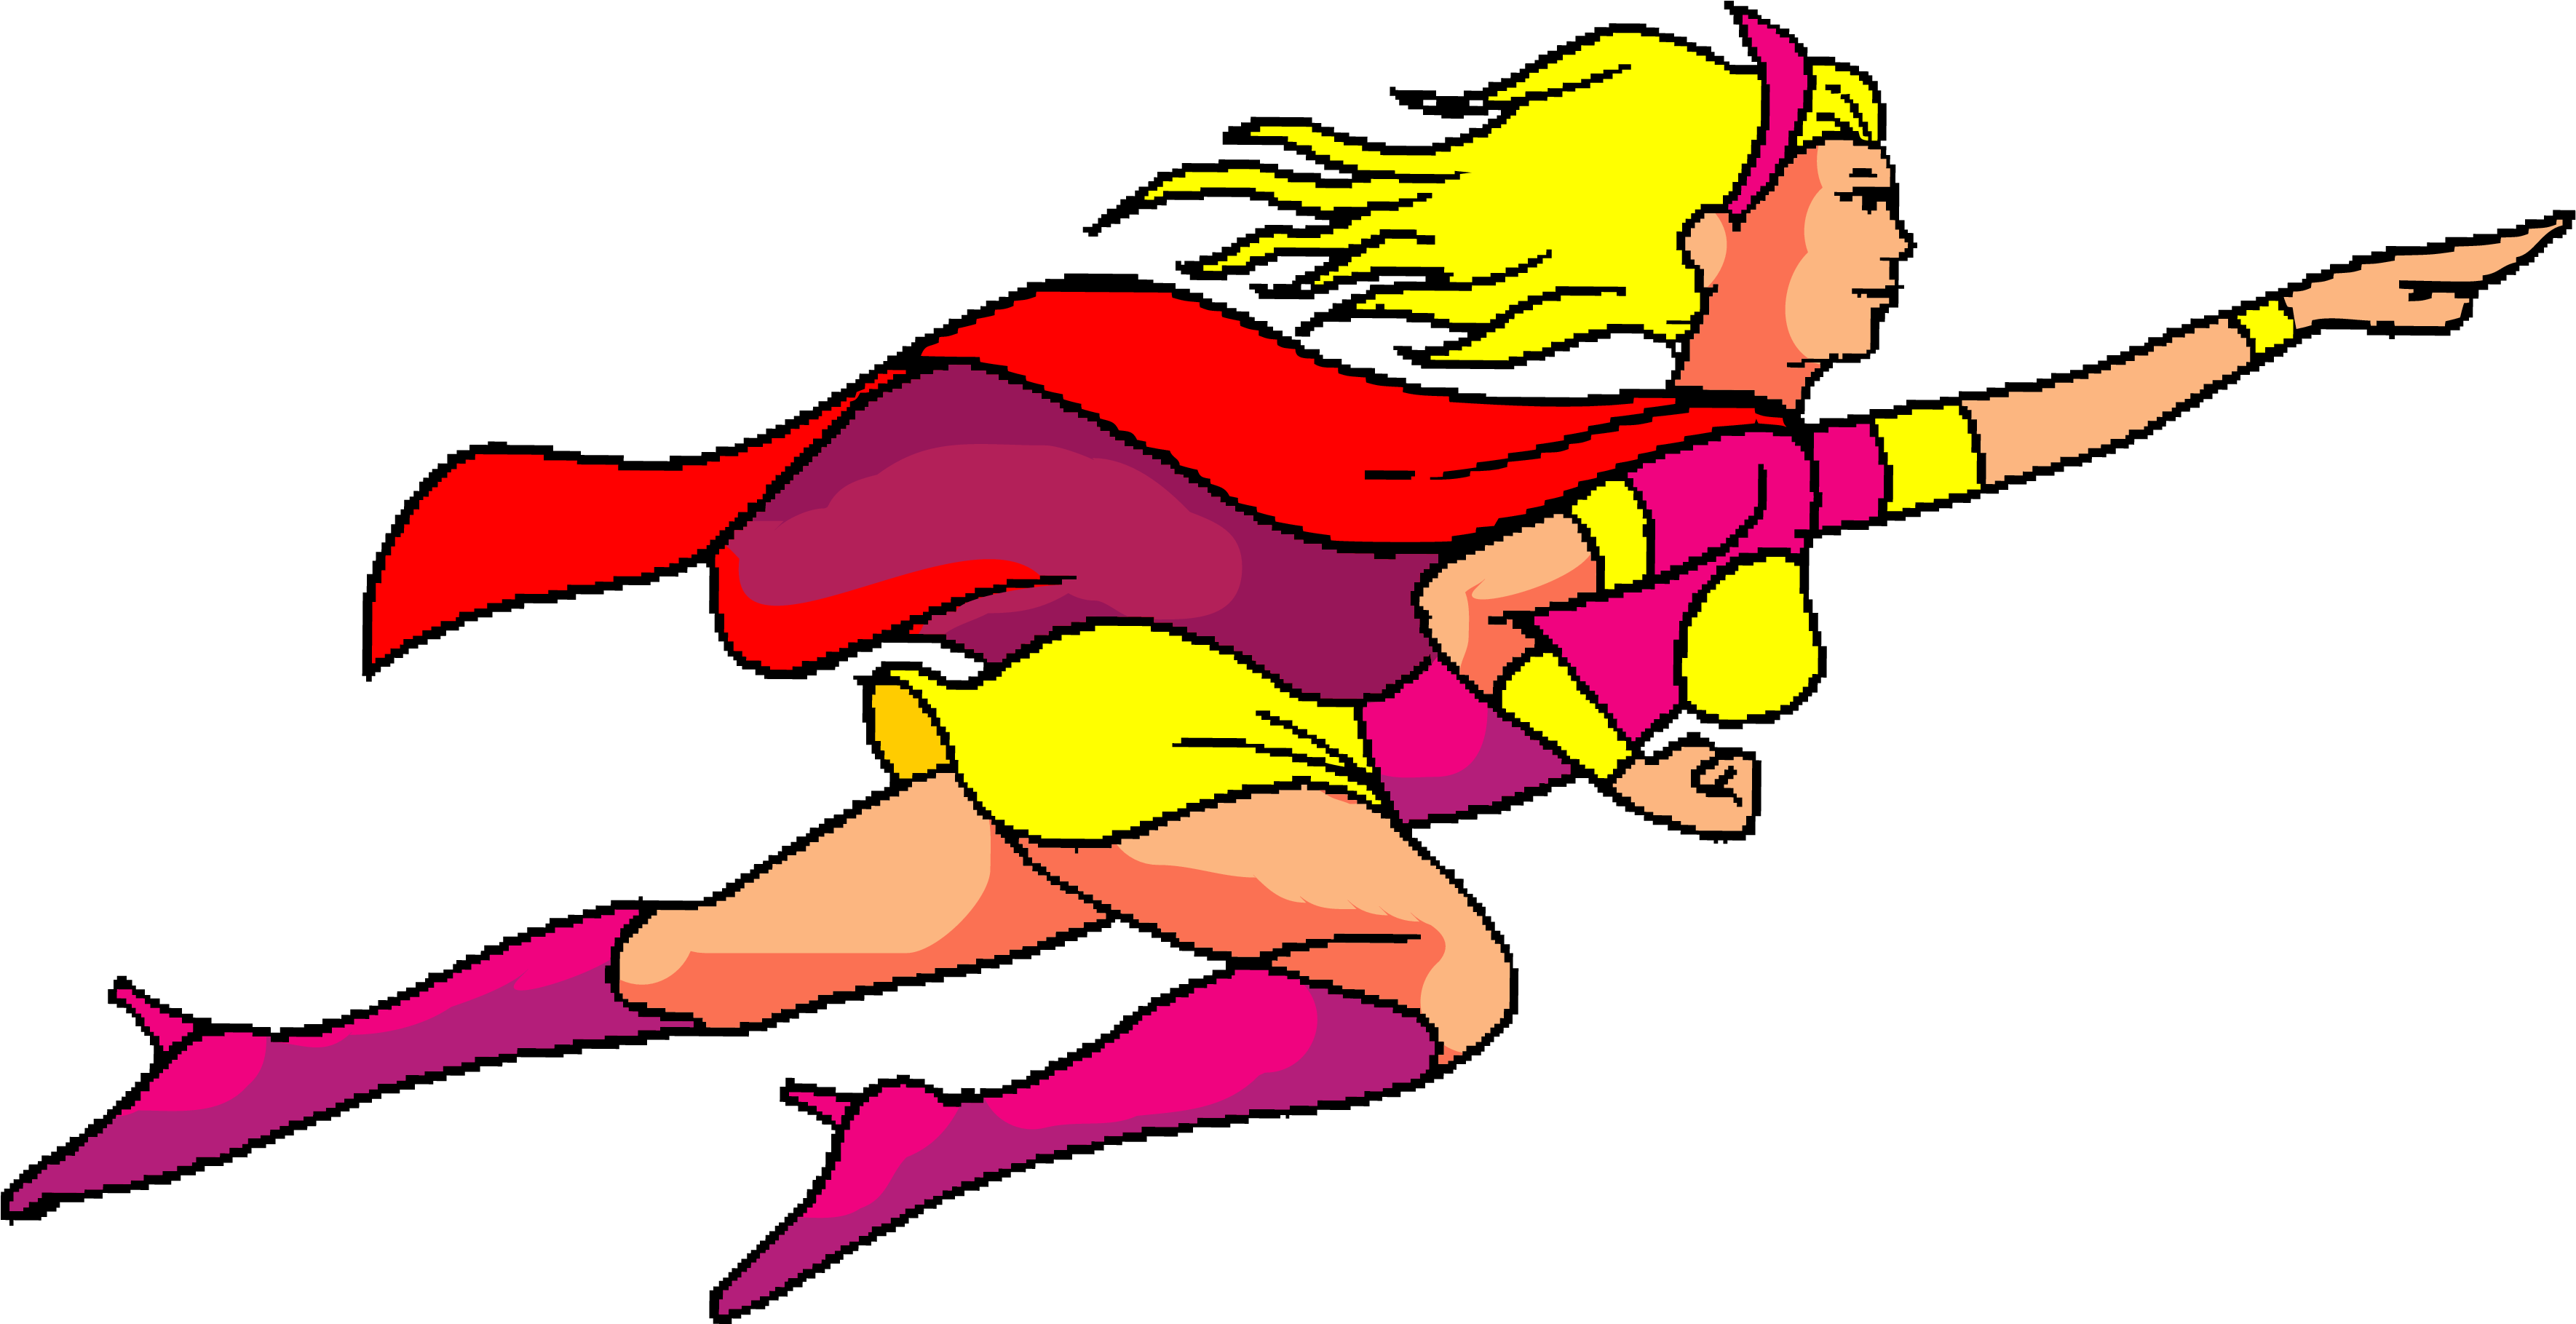 Superwoman Free Content Clip Art - Superwoman Free Content Clip Art (3541x1830)